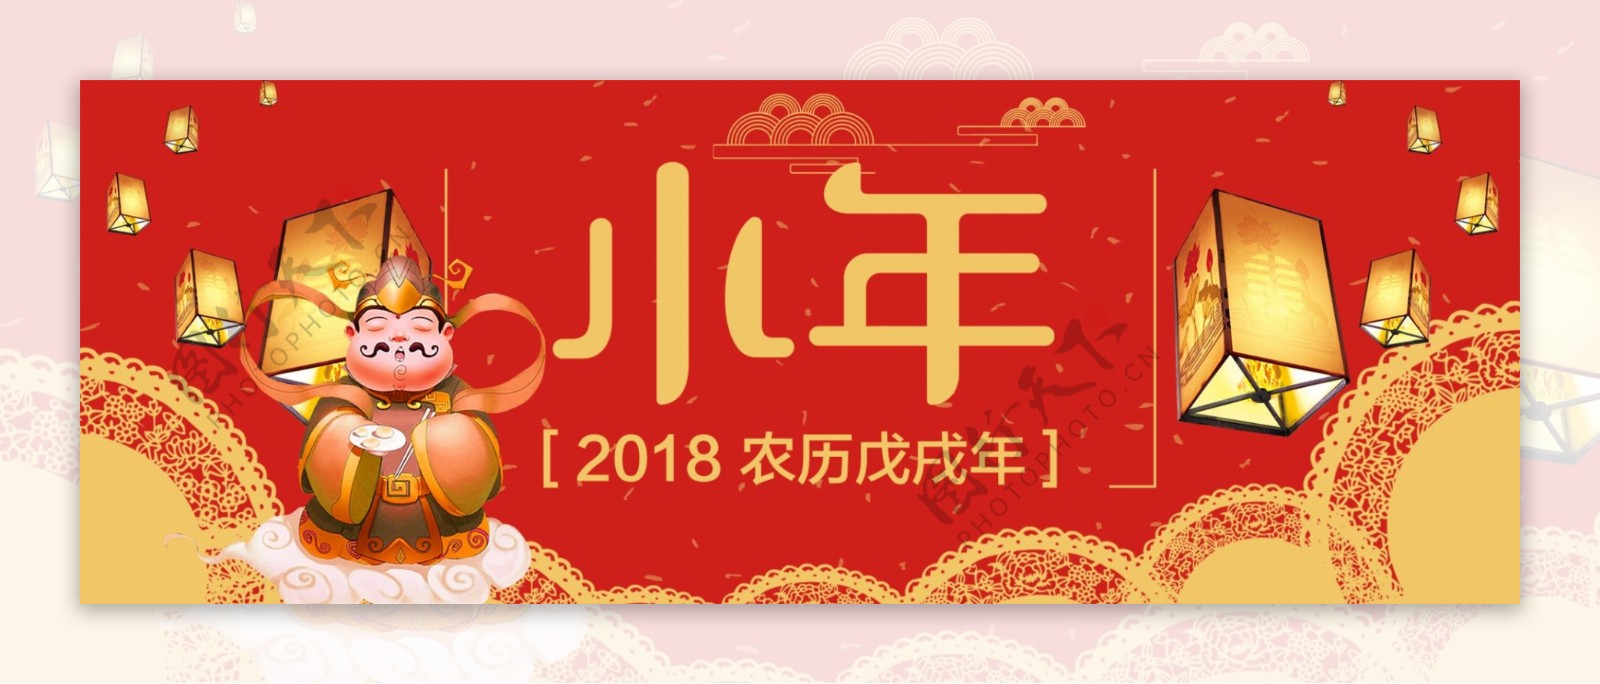 18狗年年货节红色背景小年春节大气海报